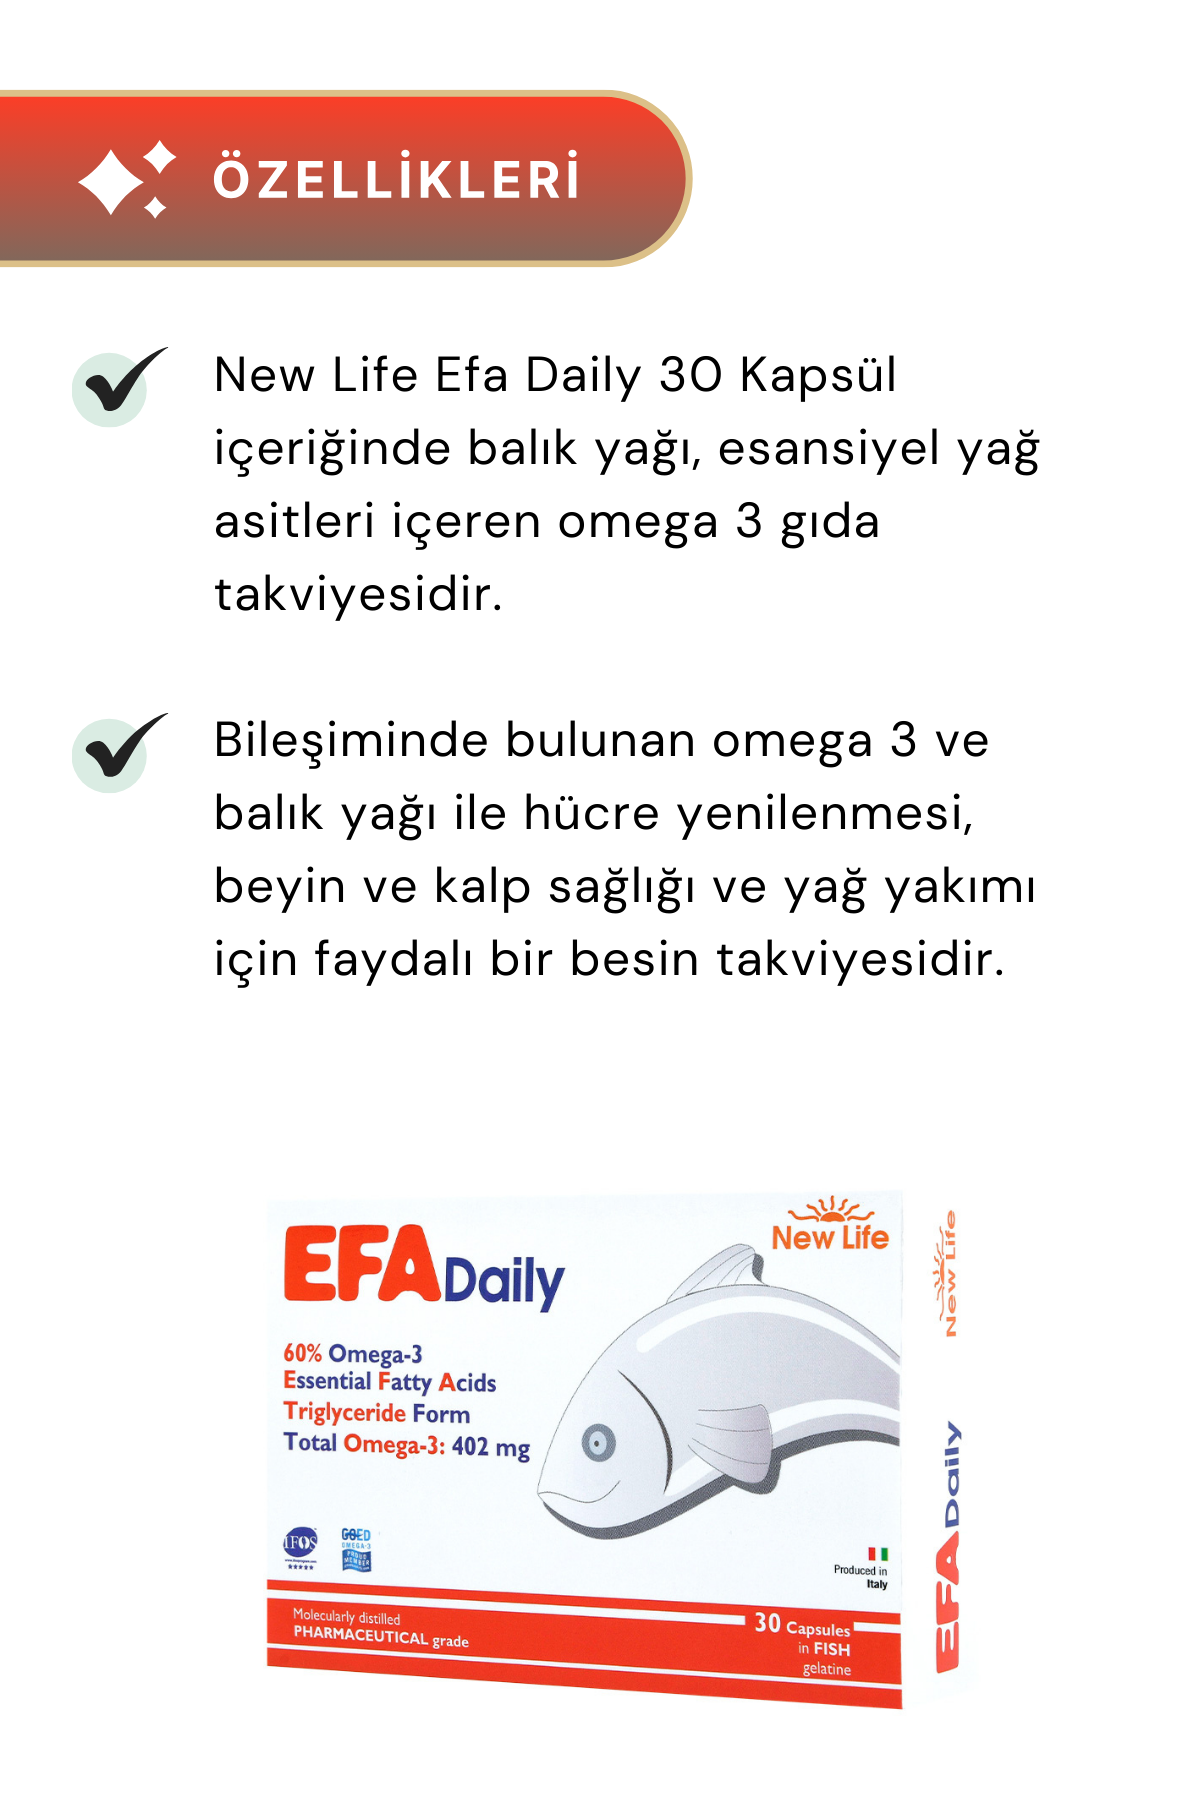 New Life EFA Daily Balık Yağı 30 Kapsül 3'lü Paket